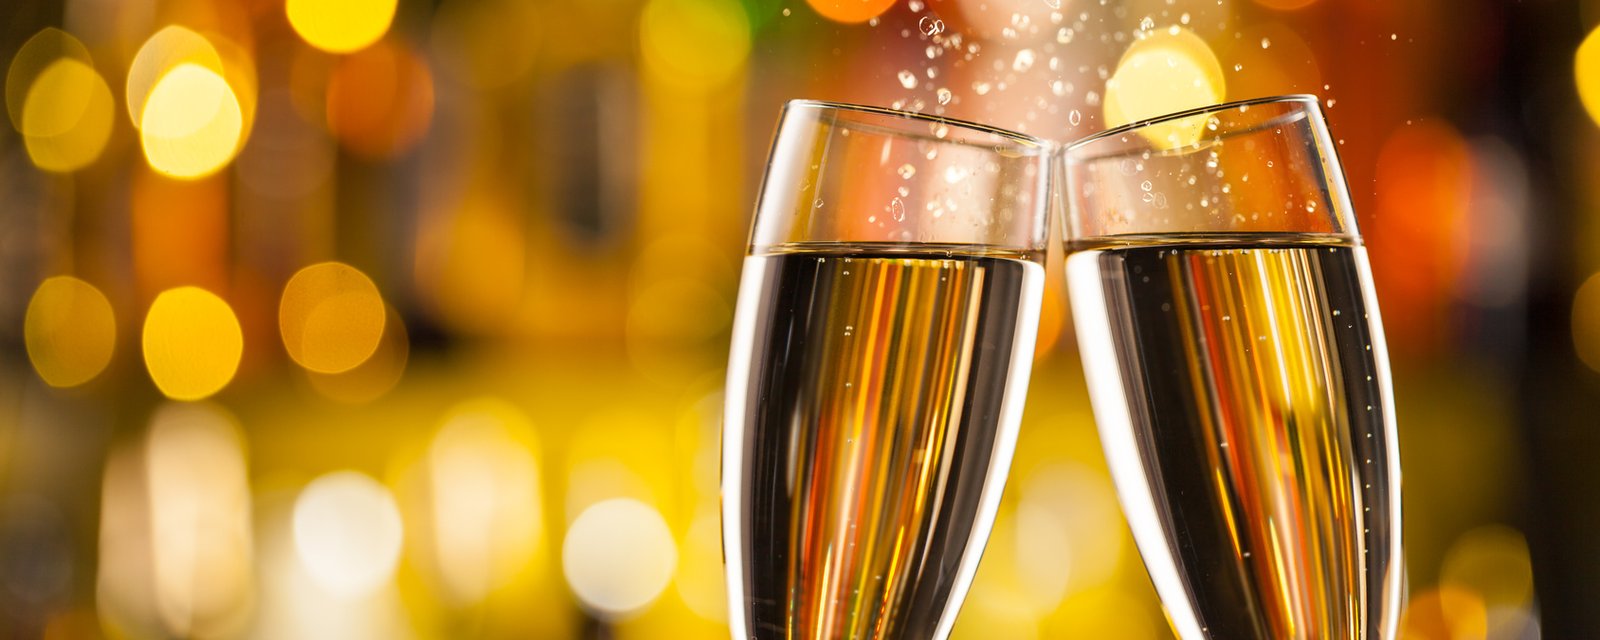 13 façons géniales de servir le champagne cette année au Nouvel An!